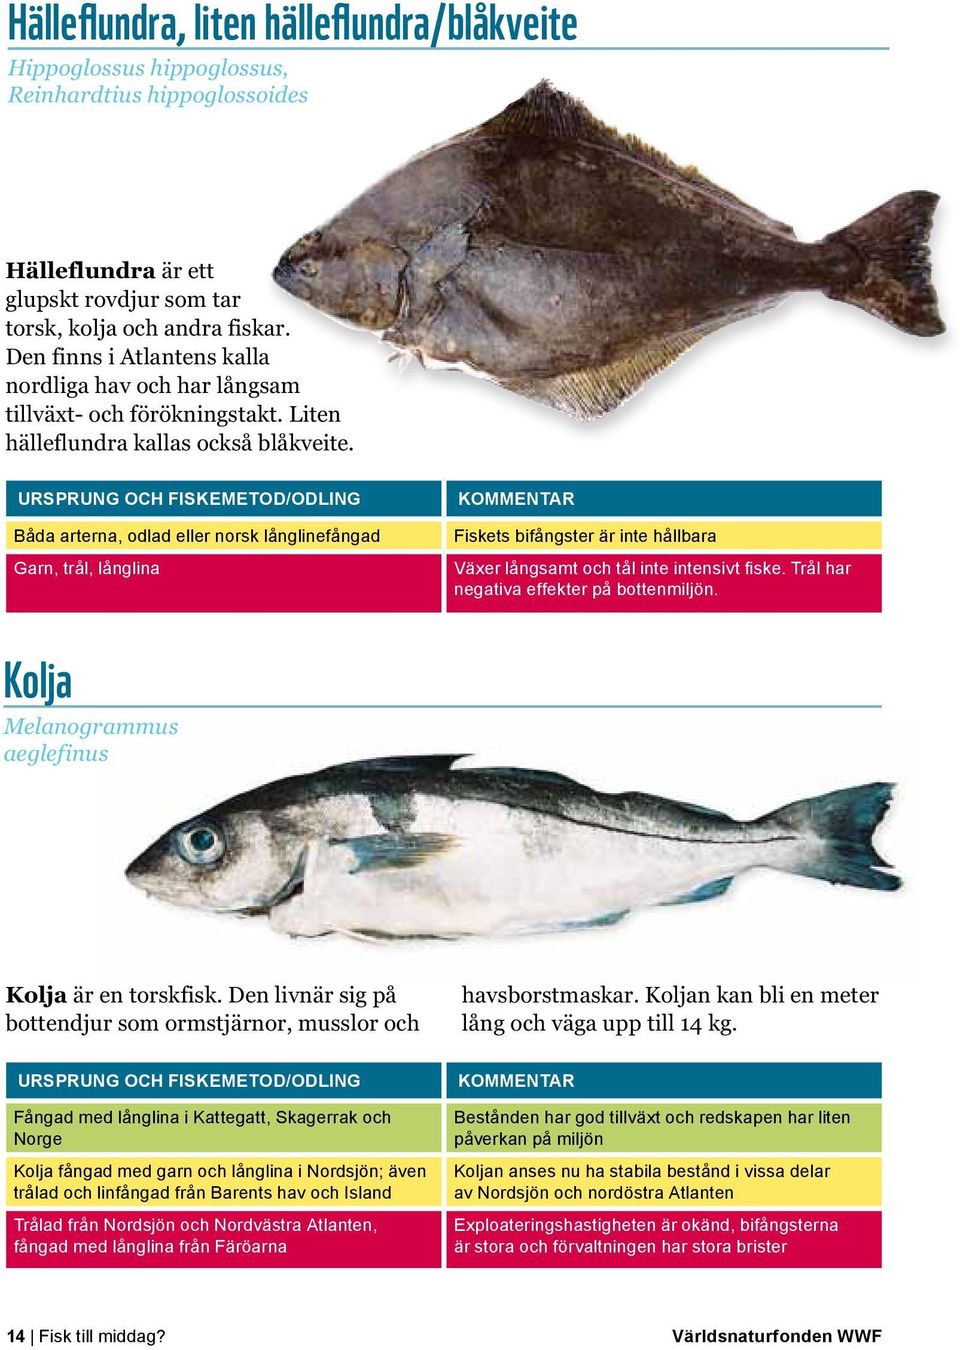 Båda arterna, odlad eller norsk långlinefångad Garn, trål, långlina Fiskets bifångster är inte hållbara Växer långsamt och tål inte intensivt fiske. Trål har negativa effekter på bottenmiljön.